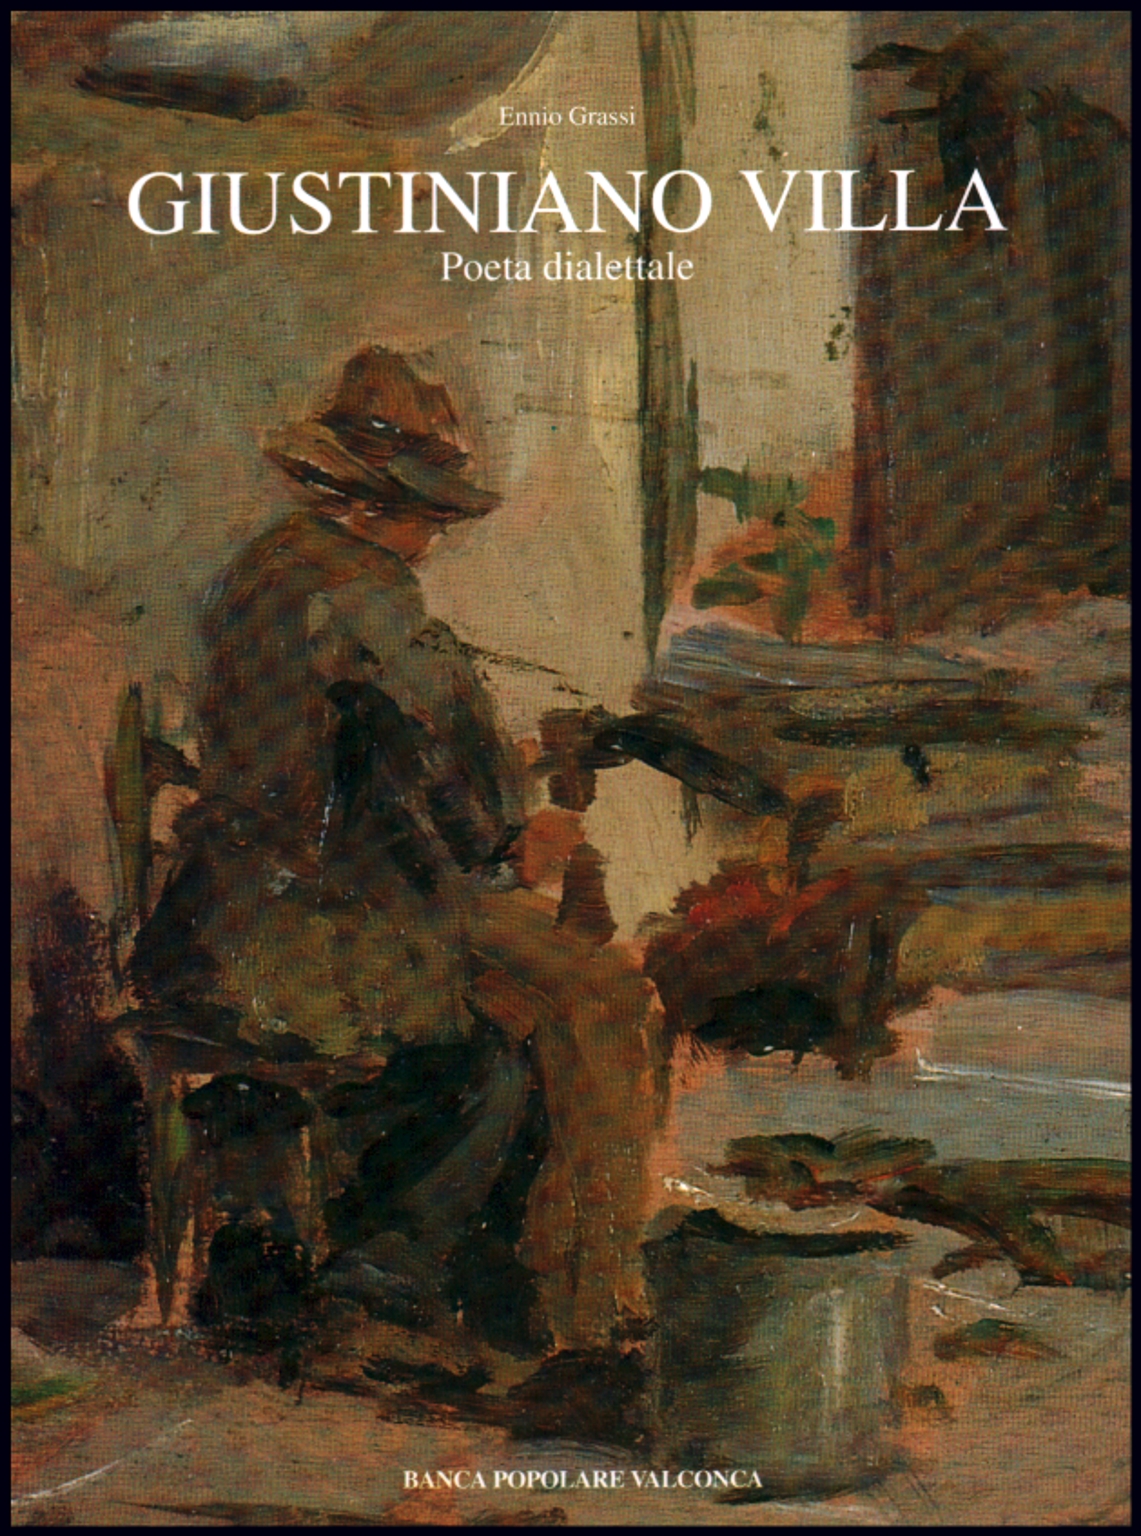 Giustiniano Villa; Poeta dialettale (1842-1919), Ennio Grassi